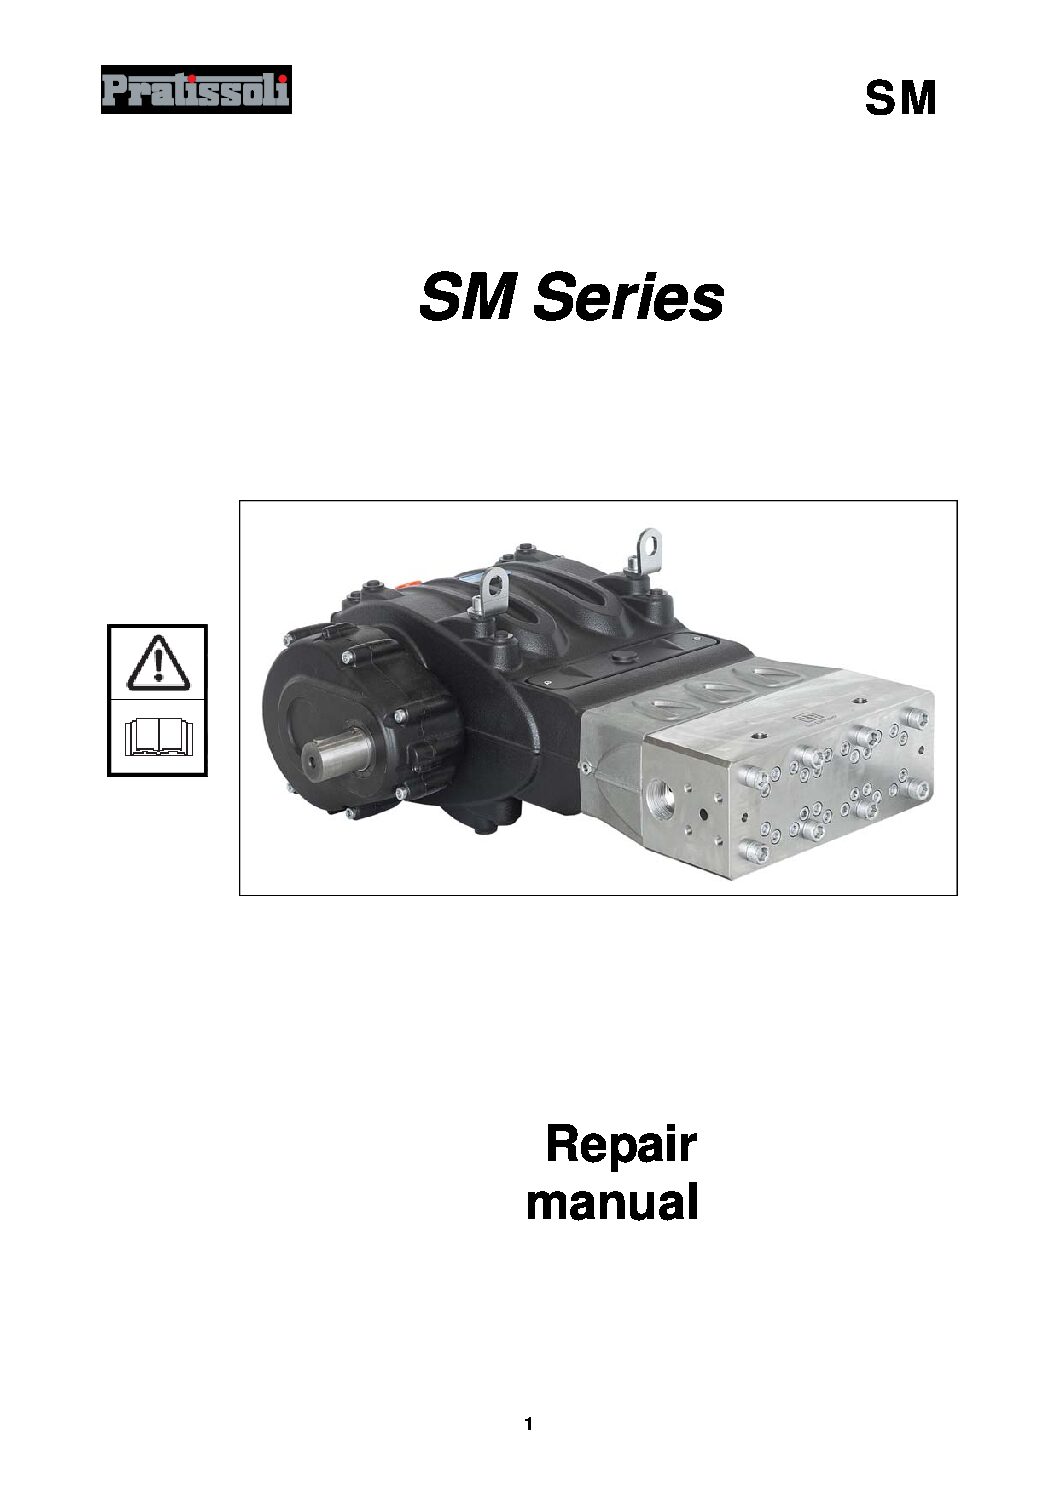 Pratissoli SM Series Repair Manual